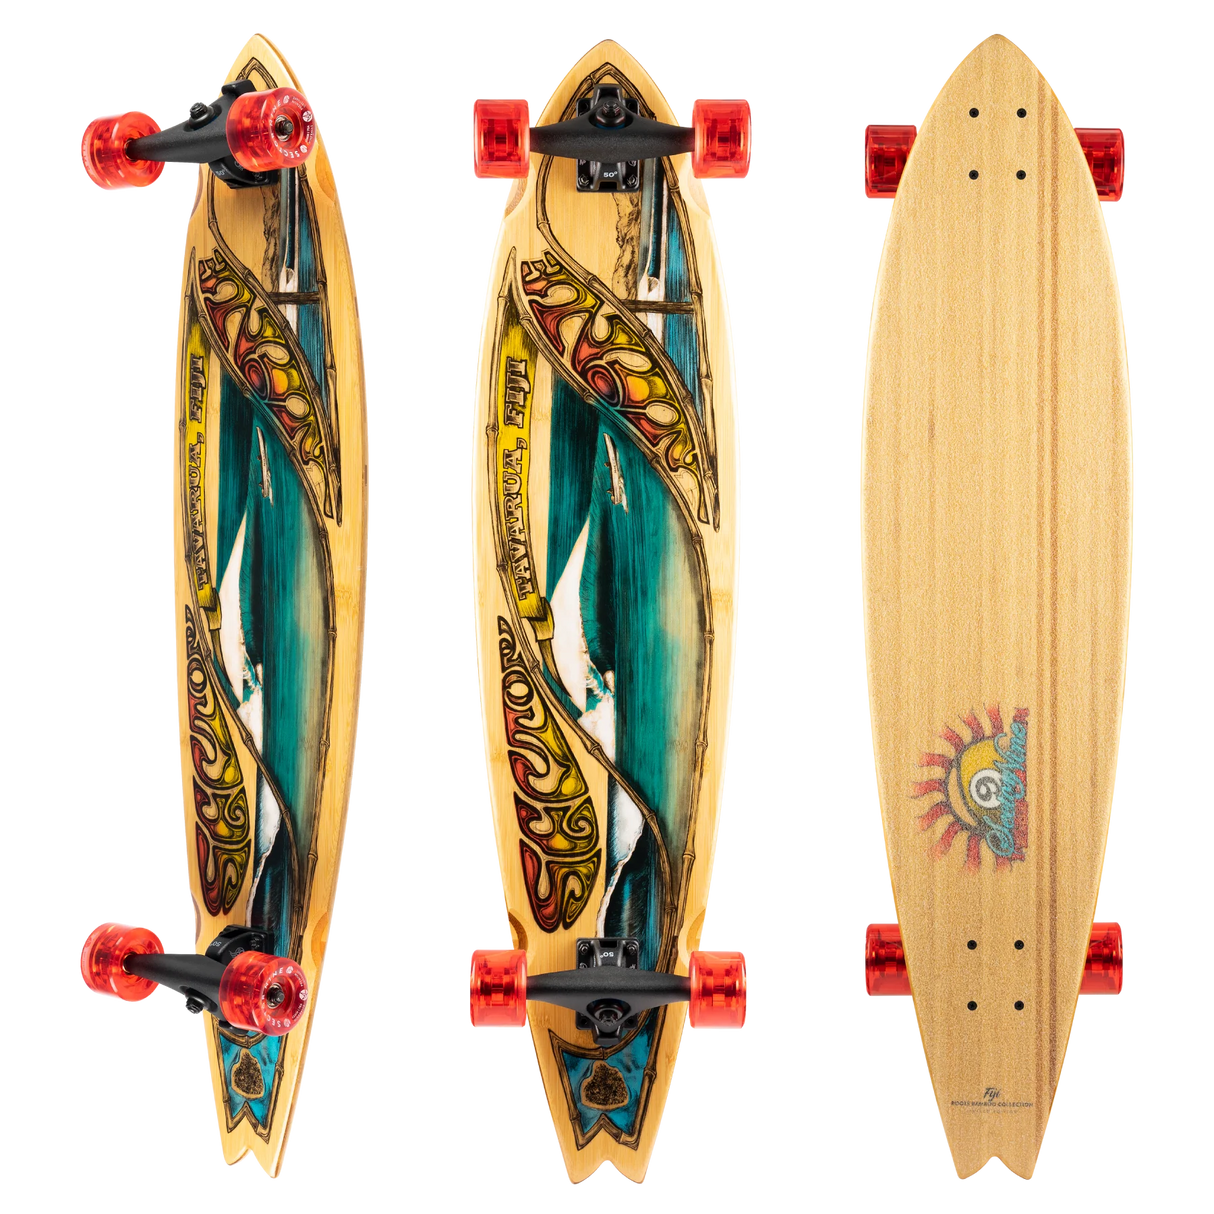 Sector Nine Fiji 39.5" X 9.35" Longboard Complete Skateboard